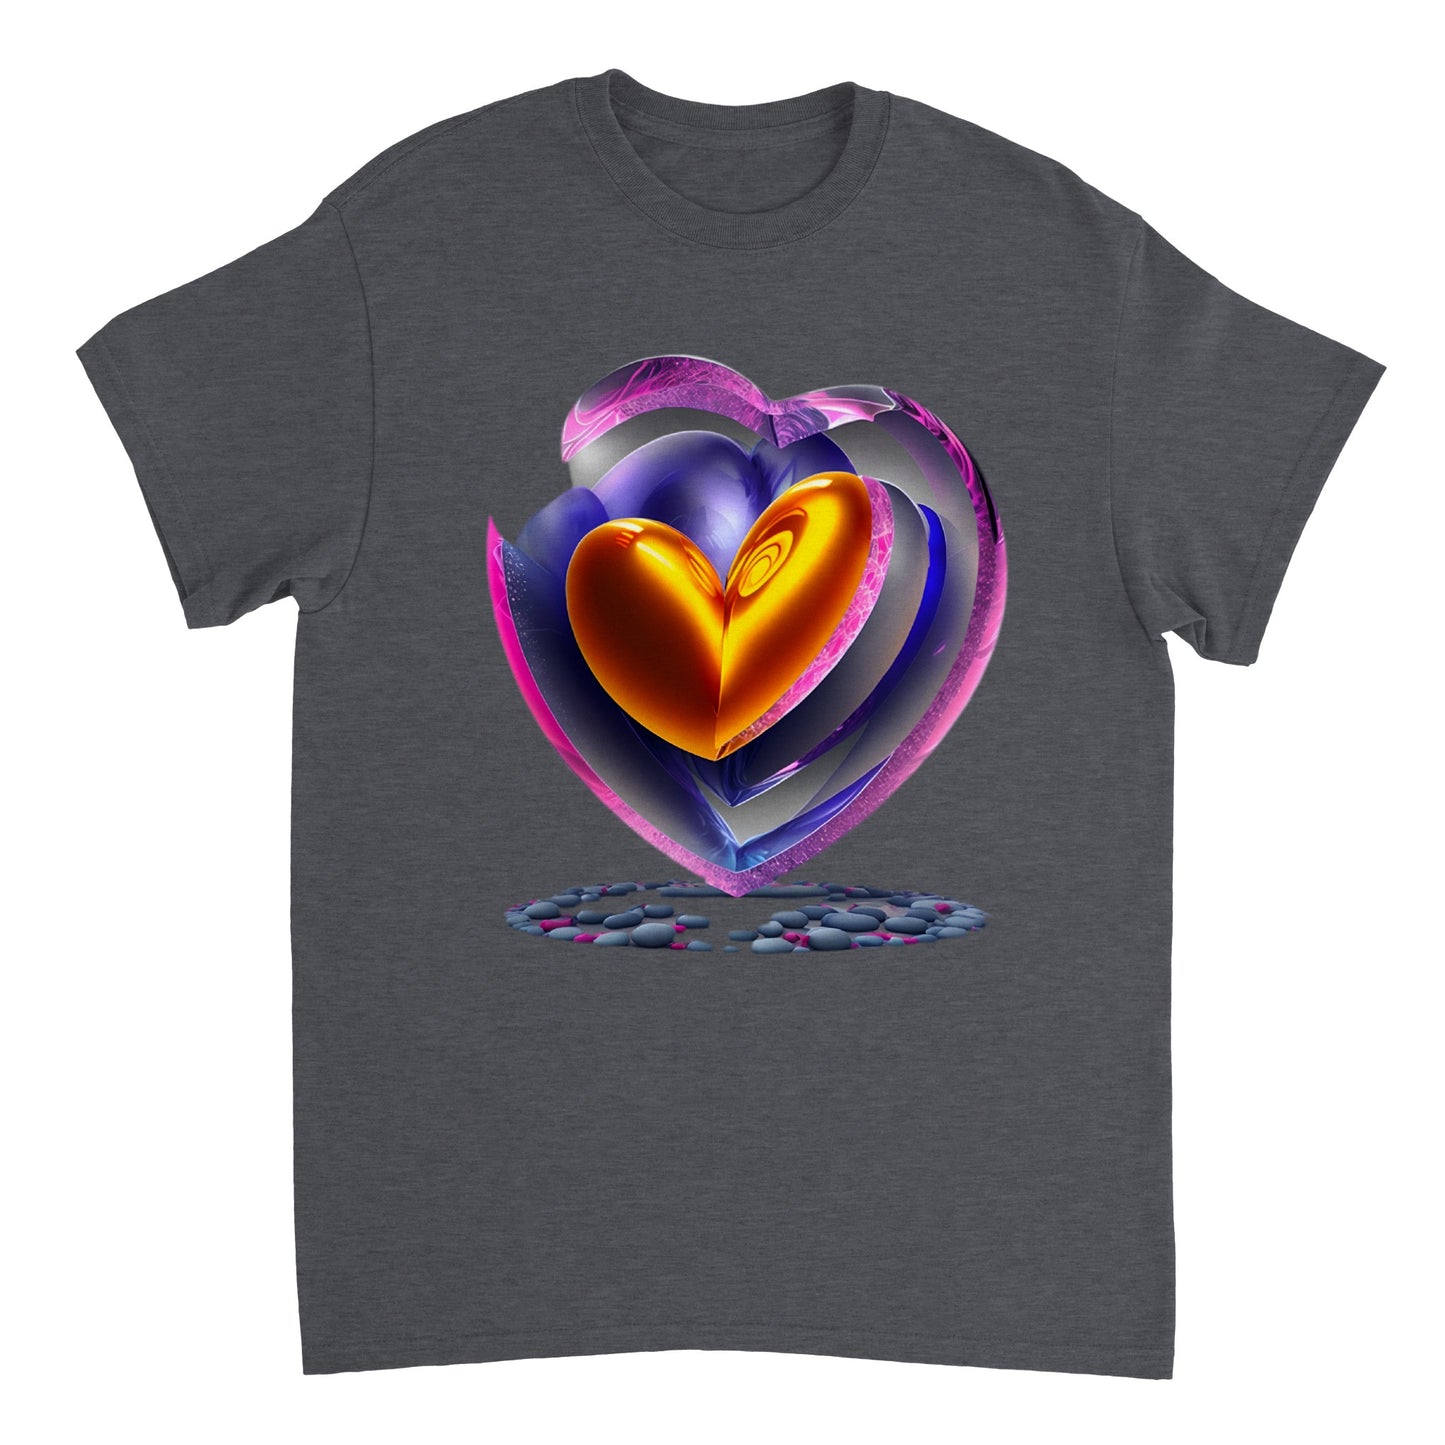 Love Heart - Heavyweight Unisex Crewneck T-shirt 83